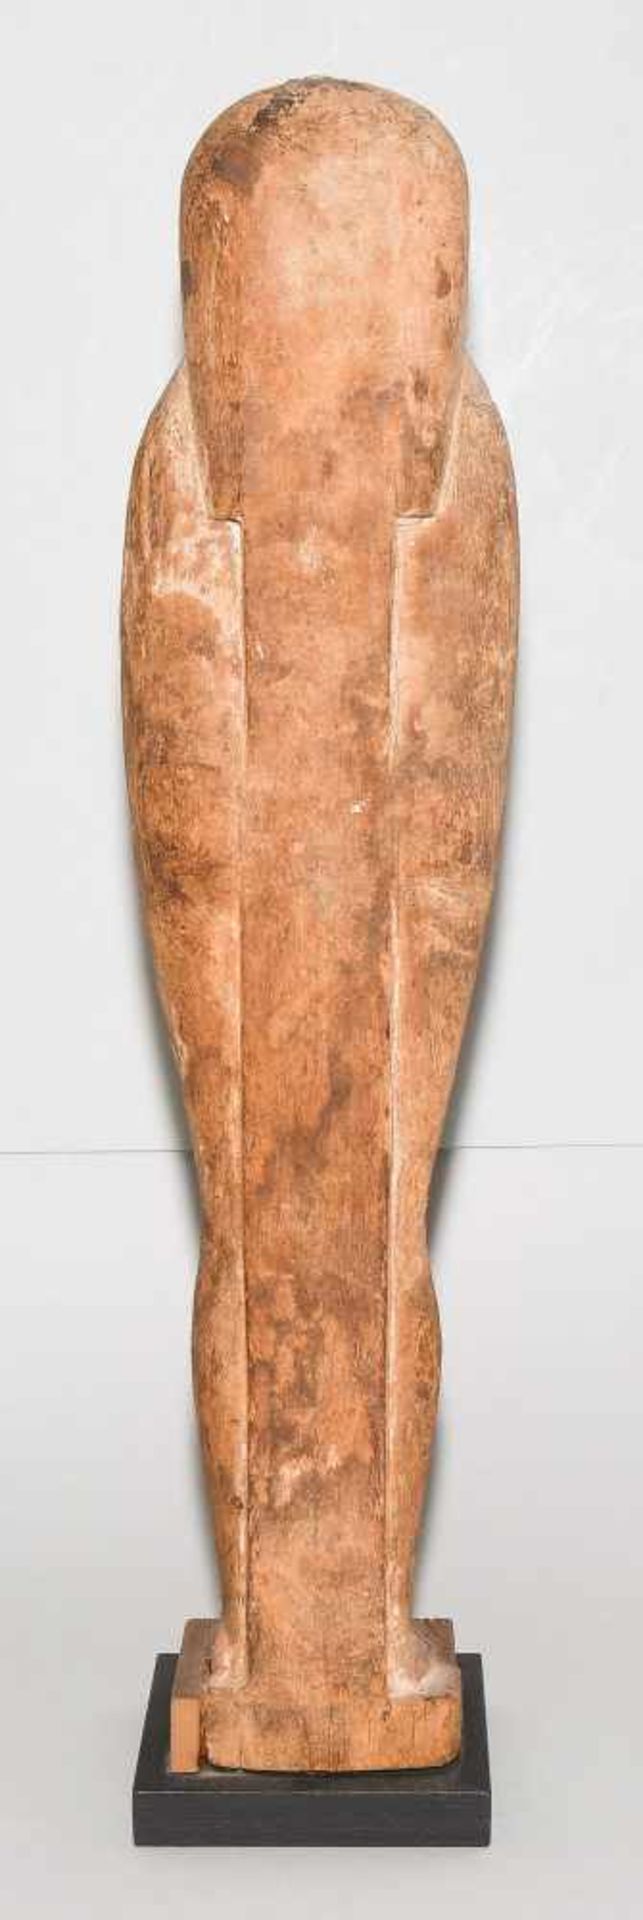 Ptah-Sokar-OsirisAegypten, Spätzeit, ca. 350 v.C. Holz mit Resten von Bemalung und Vergoldung. - Bild 4 aus 10